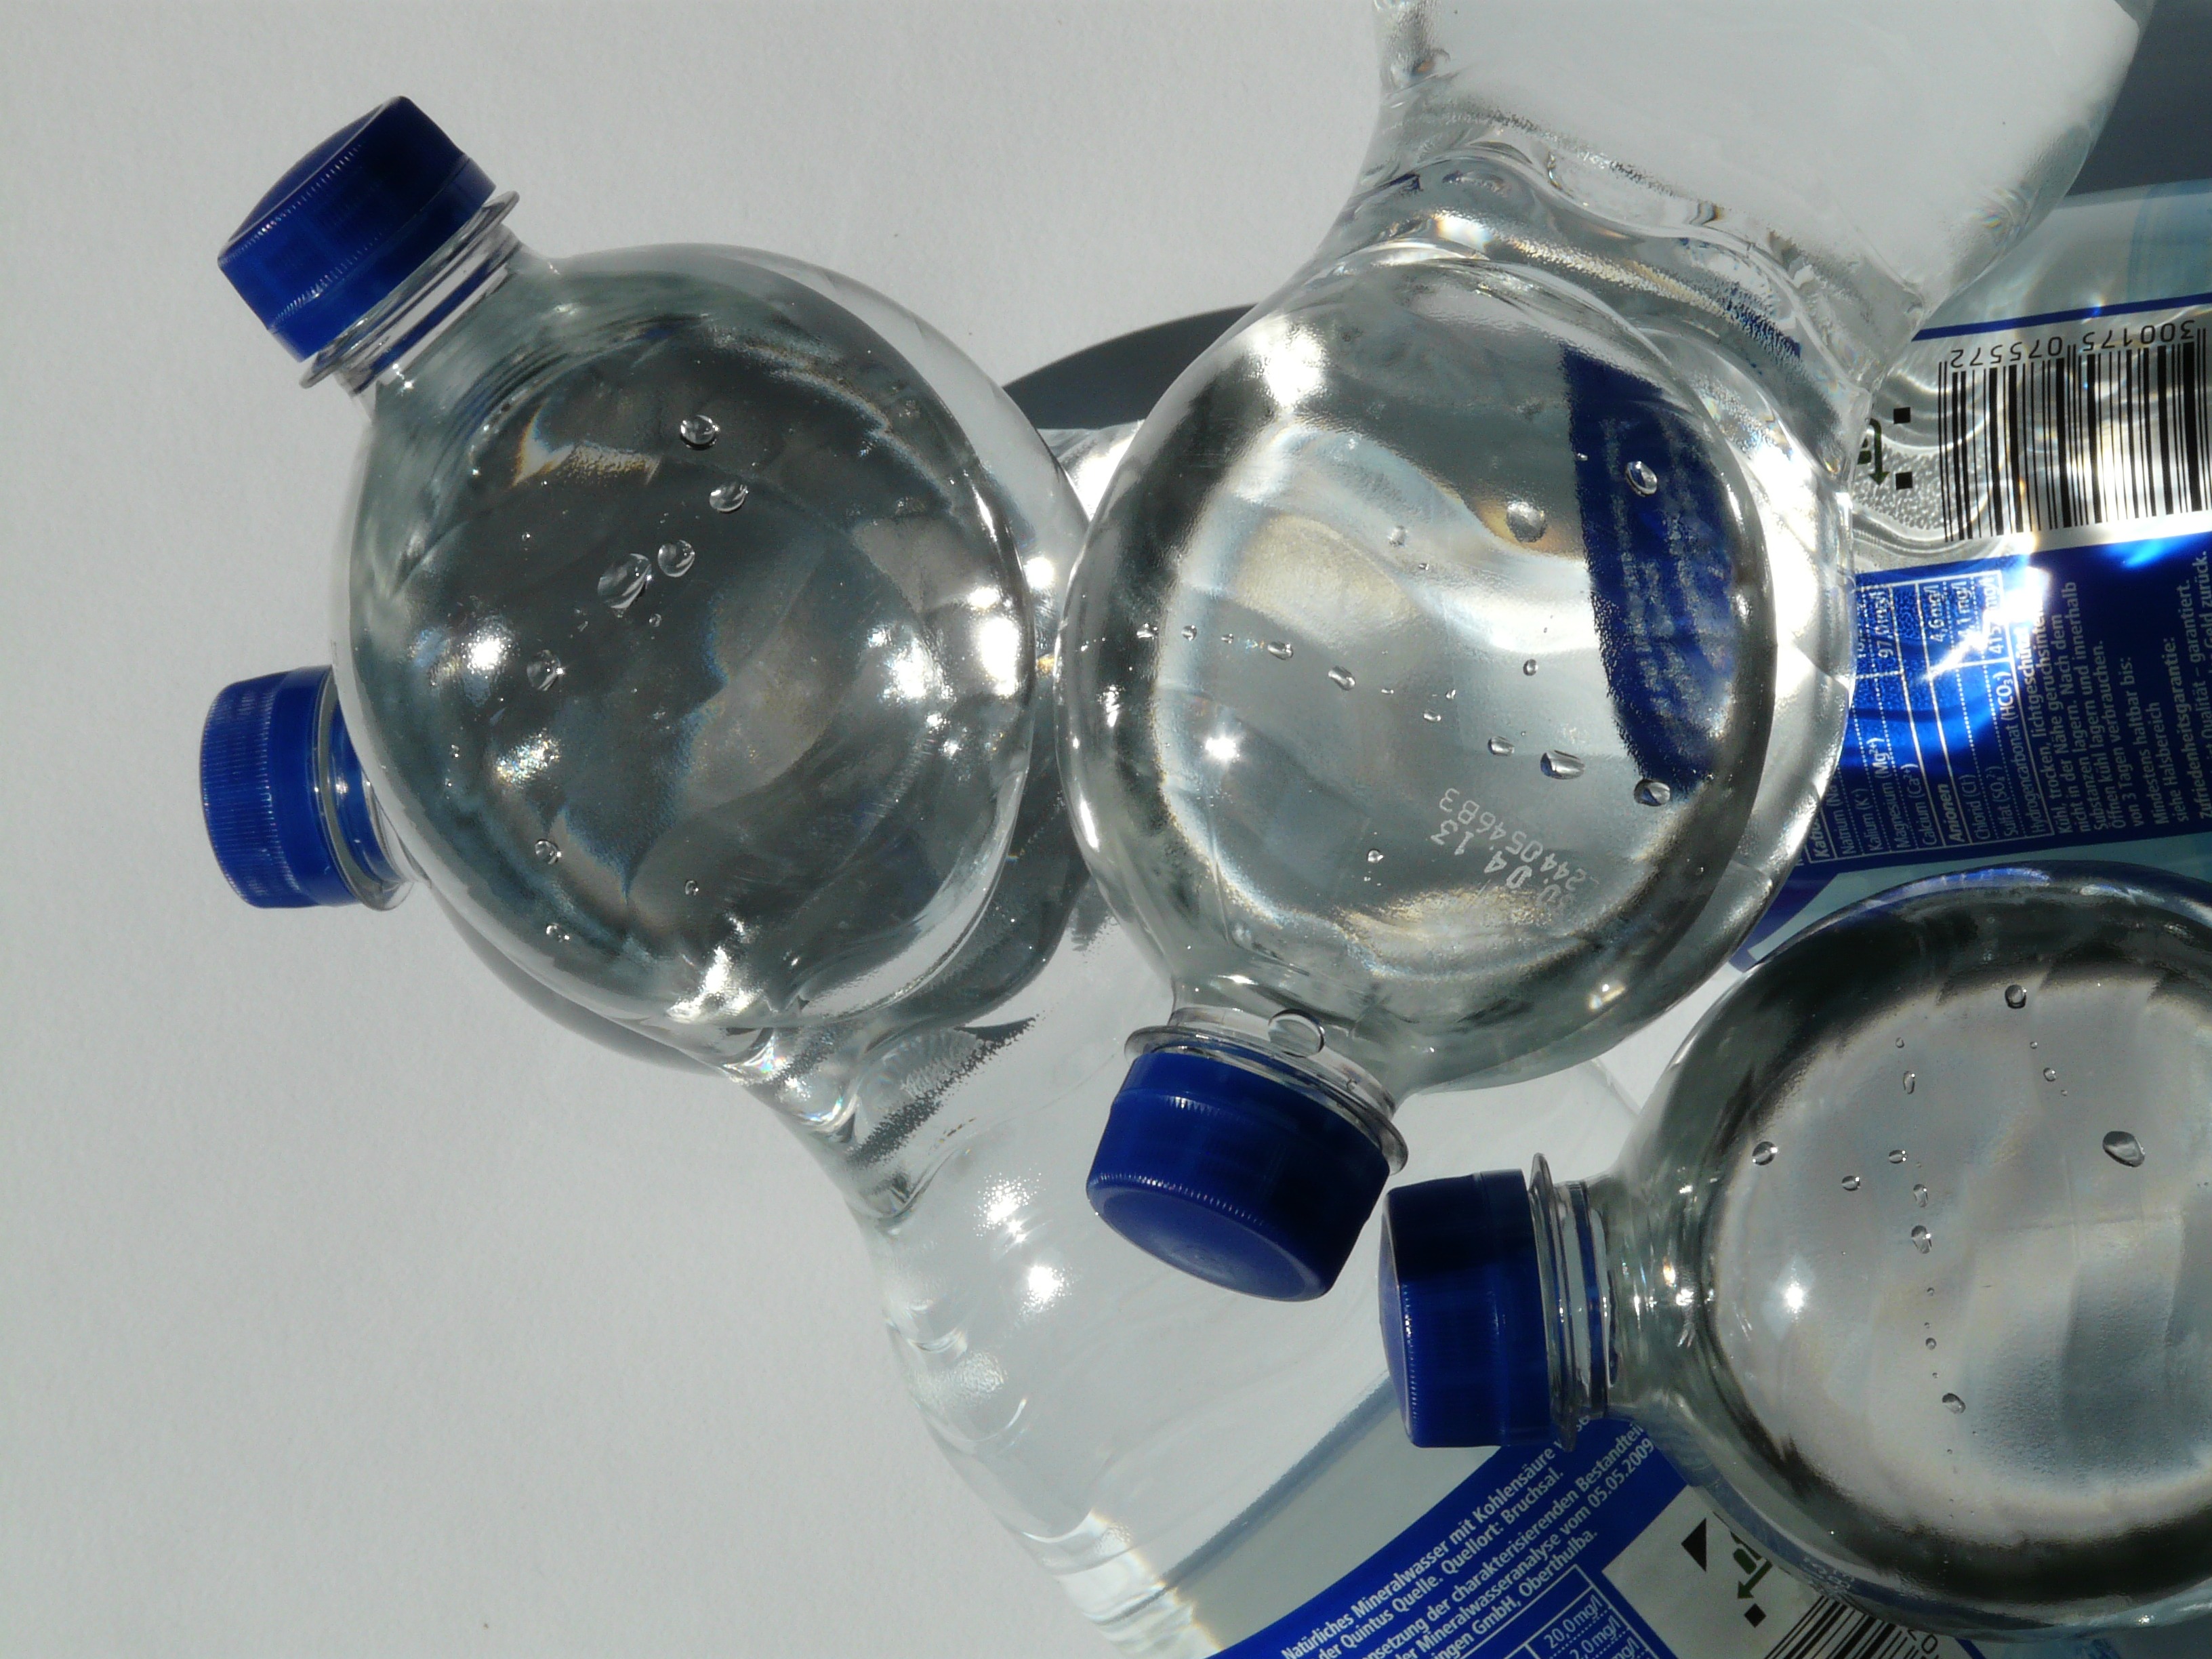 Botellas de polietileno. Imagen: Hans. Fuente: Pixabay.